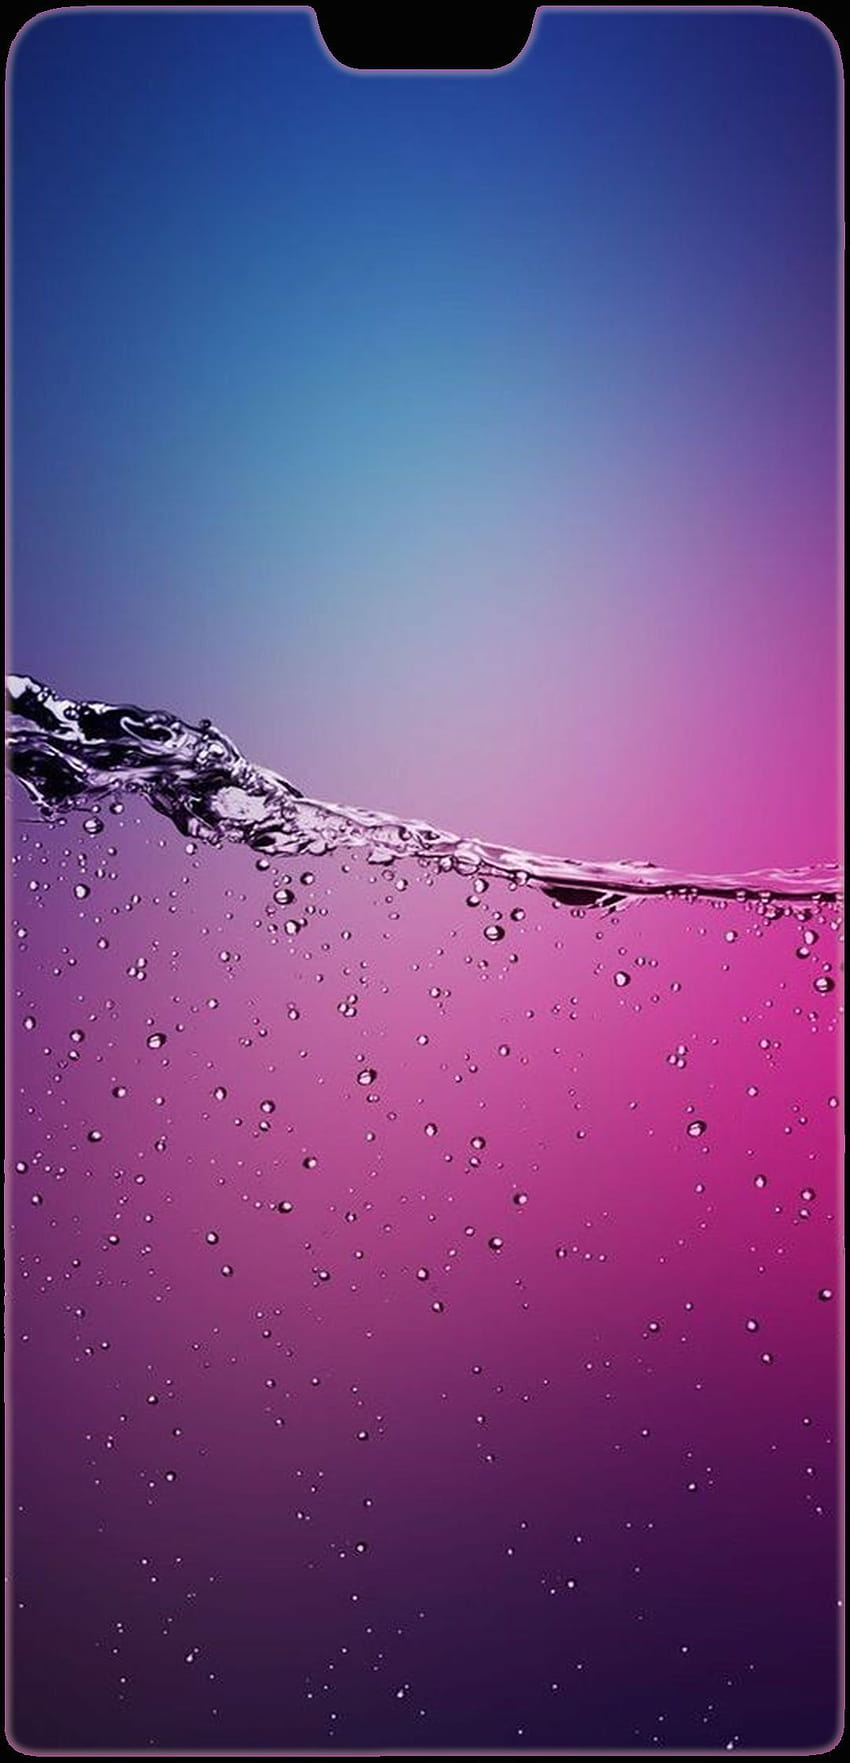 Twilight p20 pro Huawei P20 Notch in 2019, water drop notch HD phone wallpaper